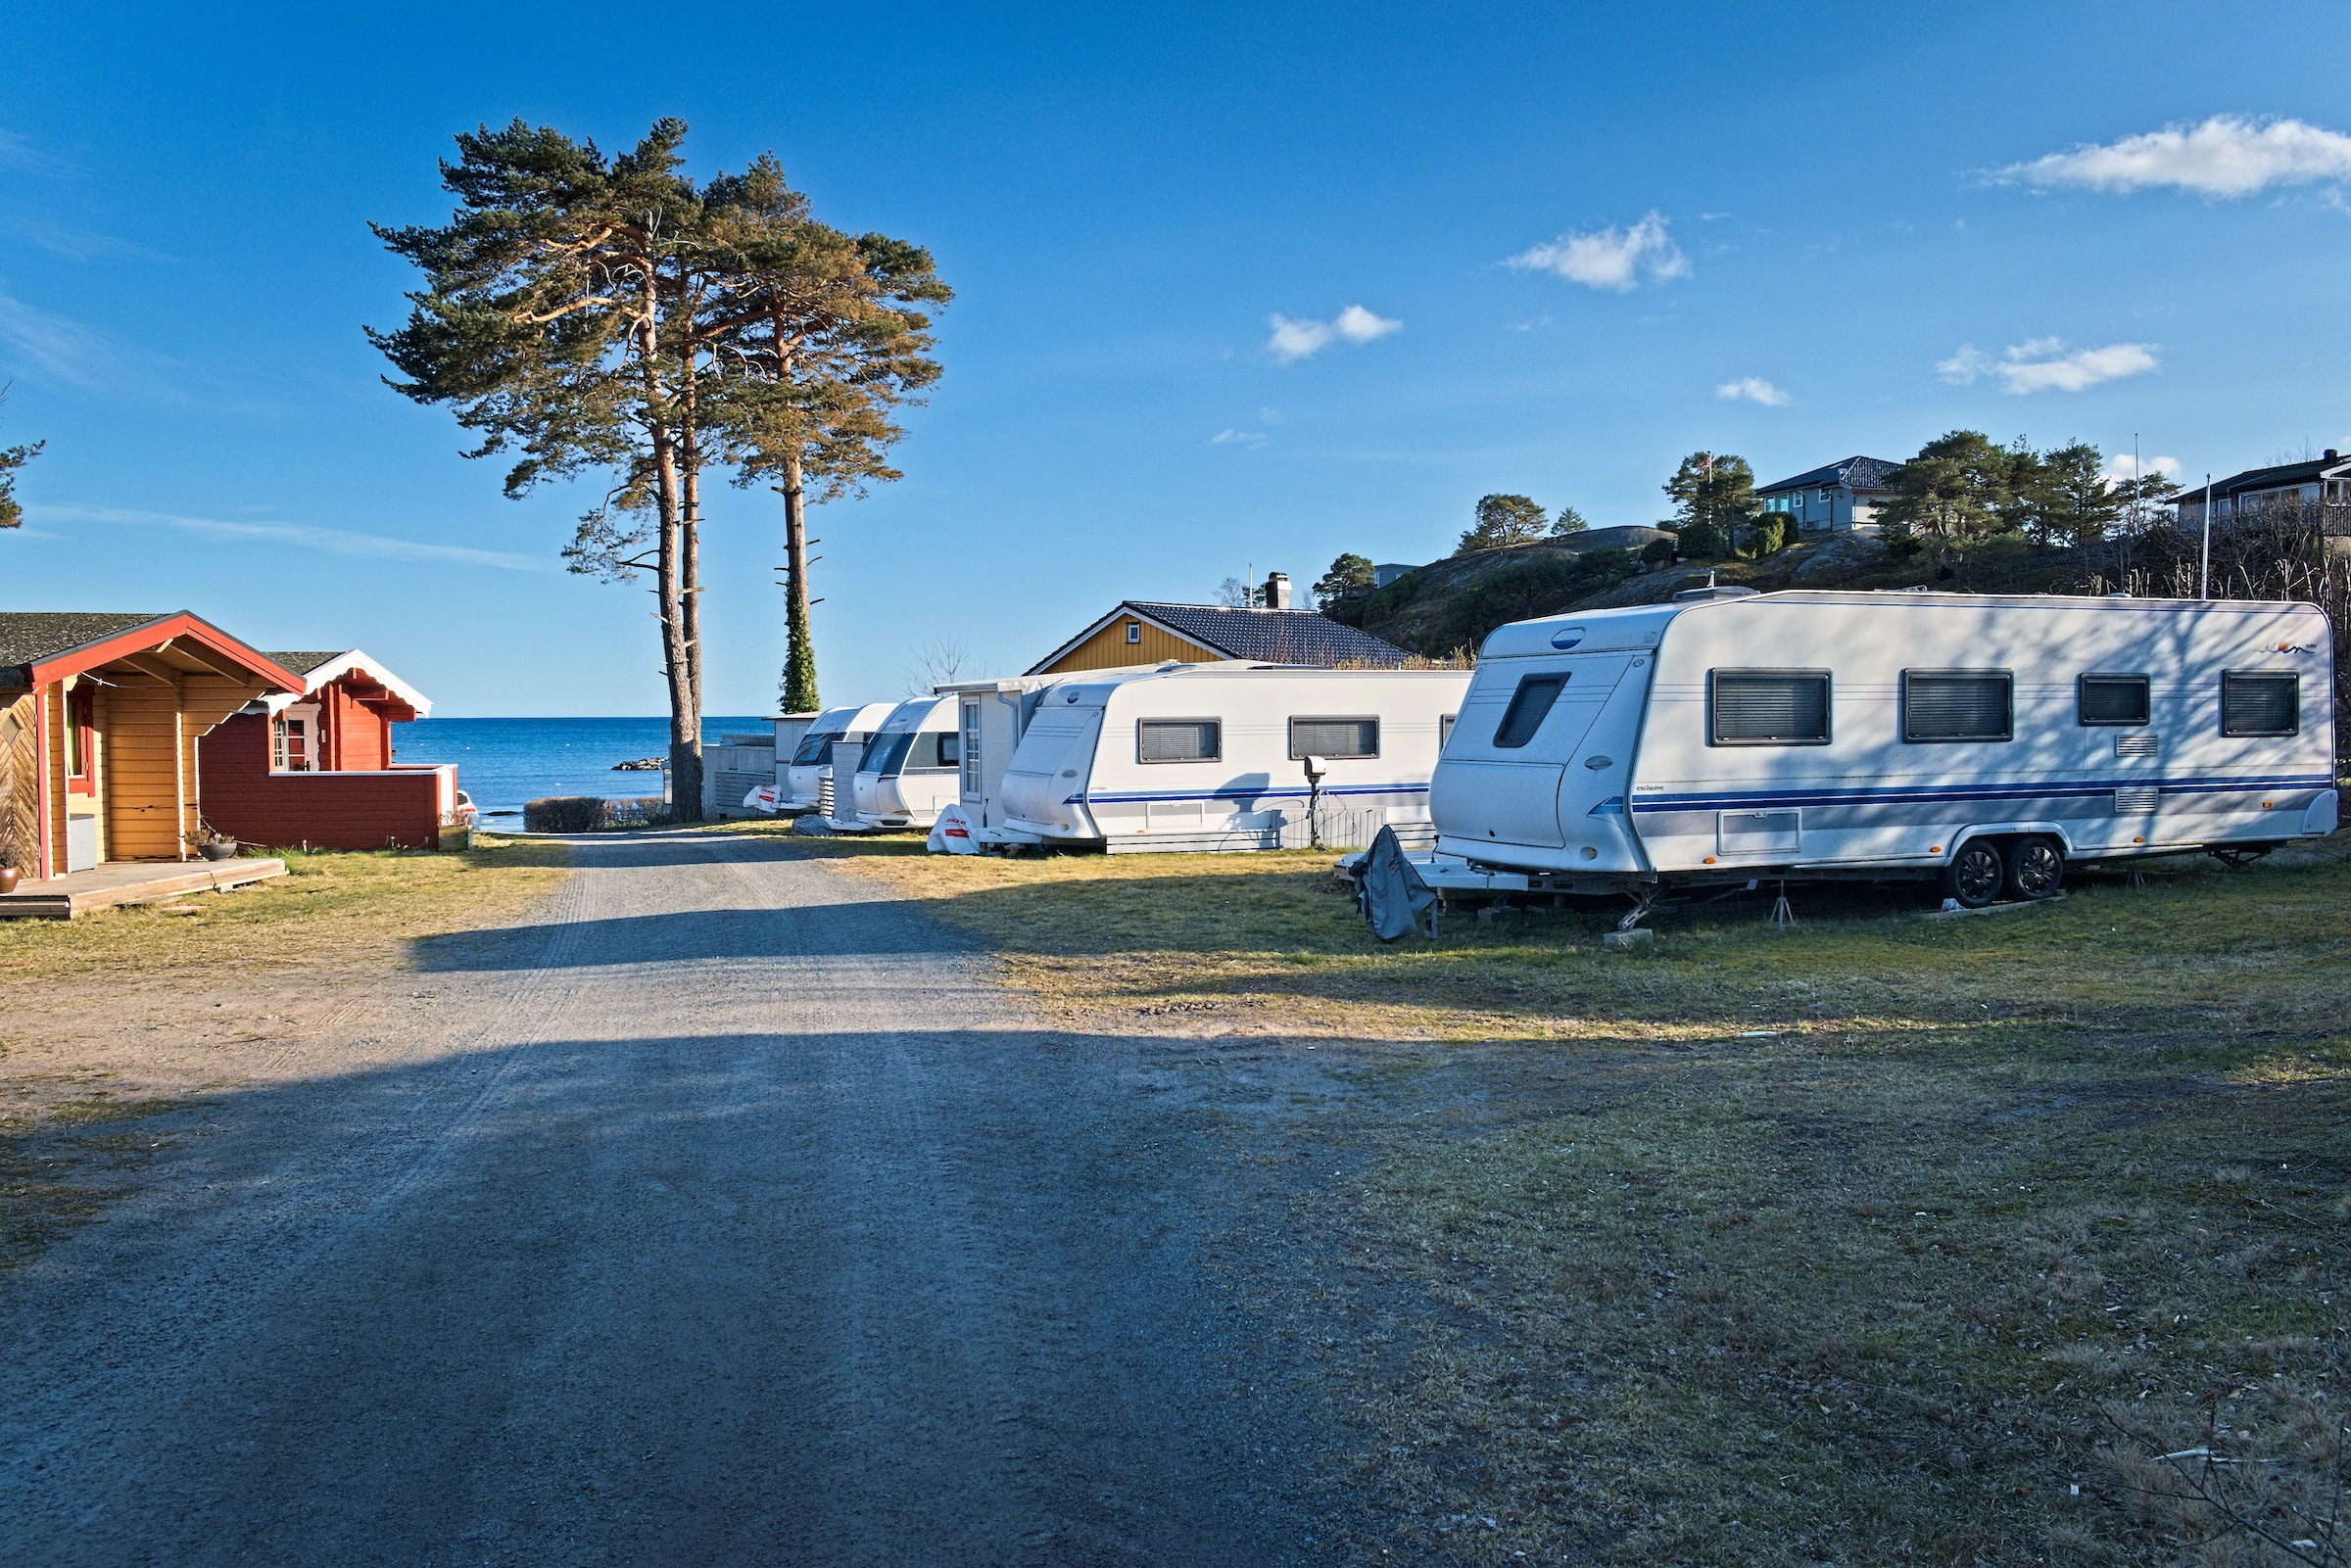 Campingvogner på campingplass